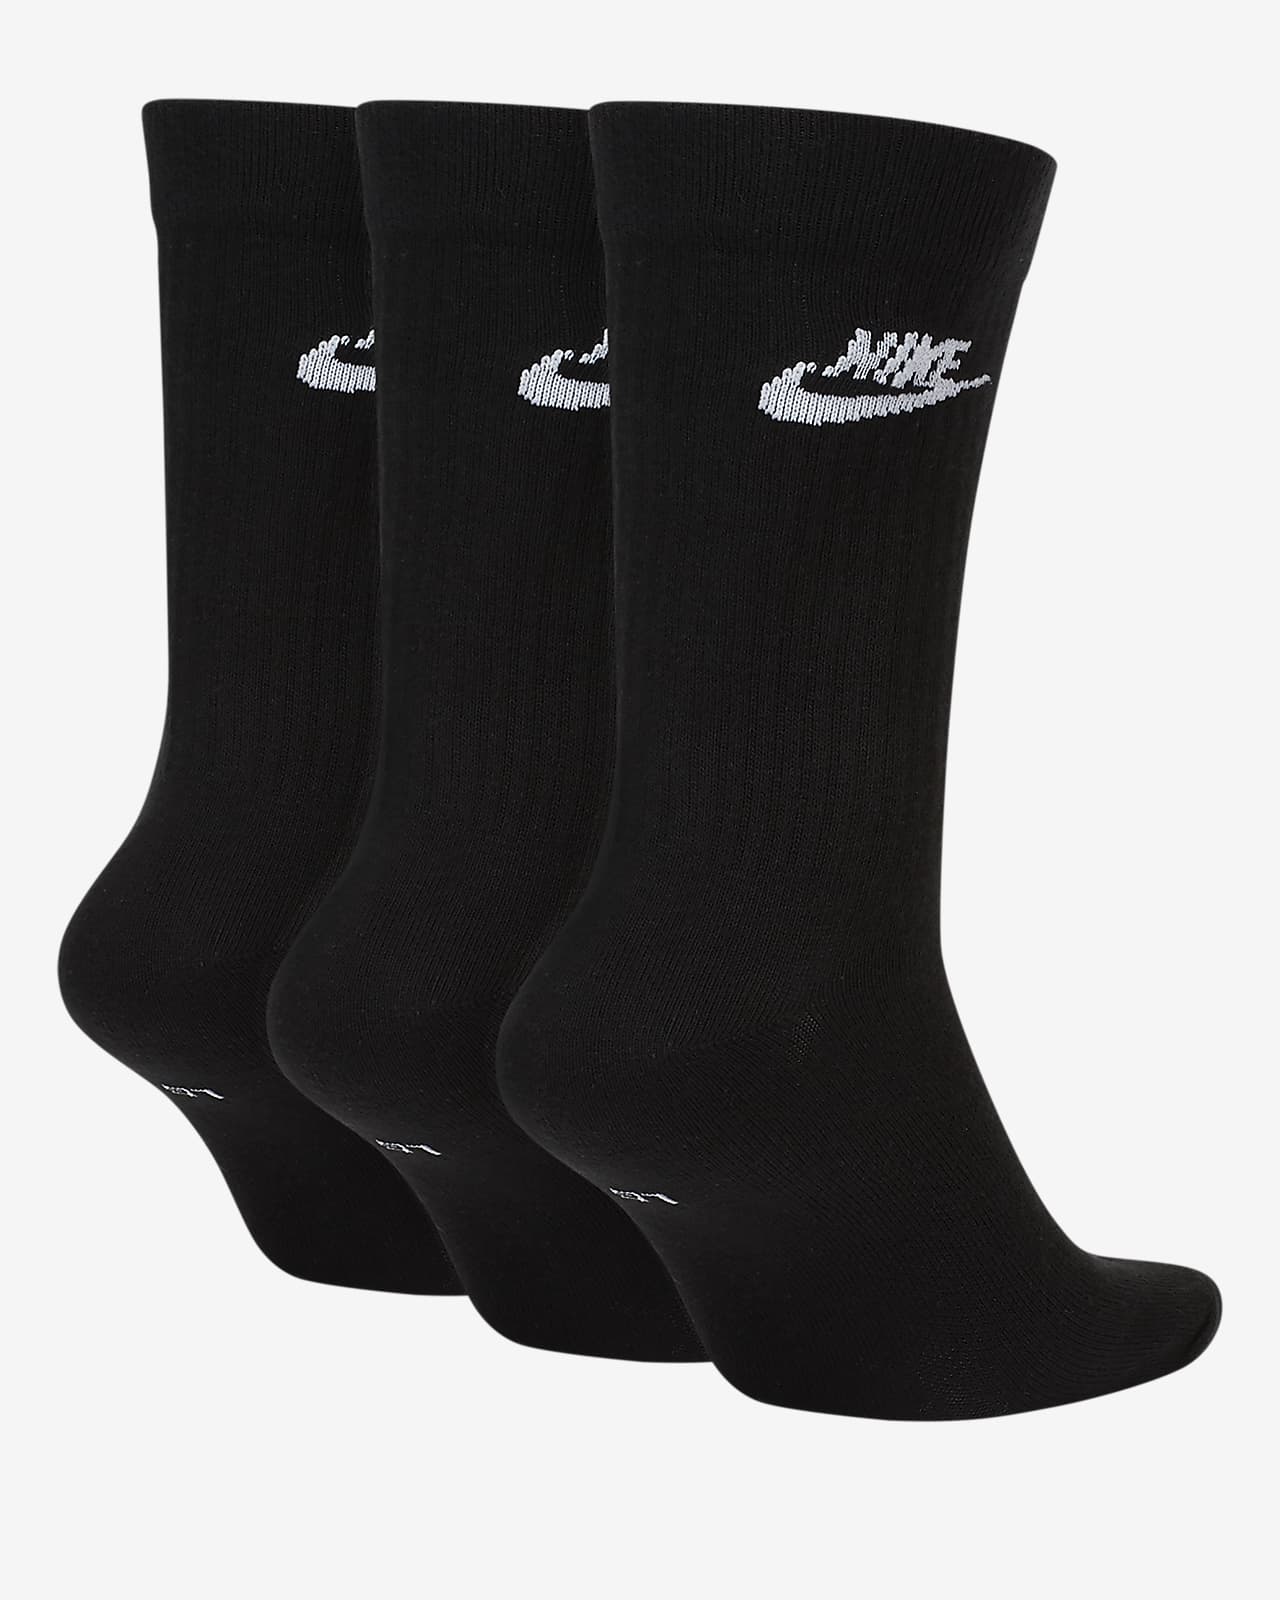 black and white nike crew socks